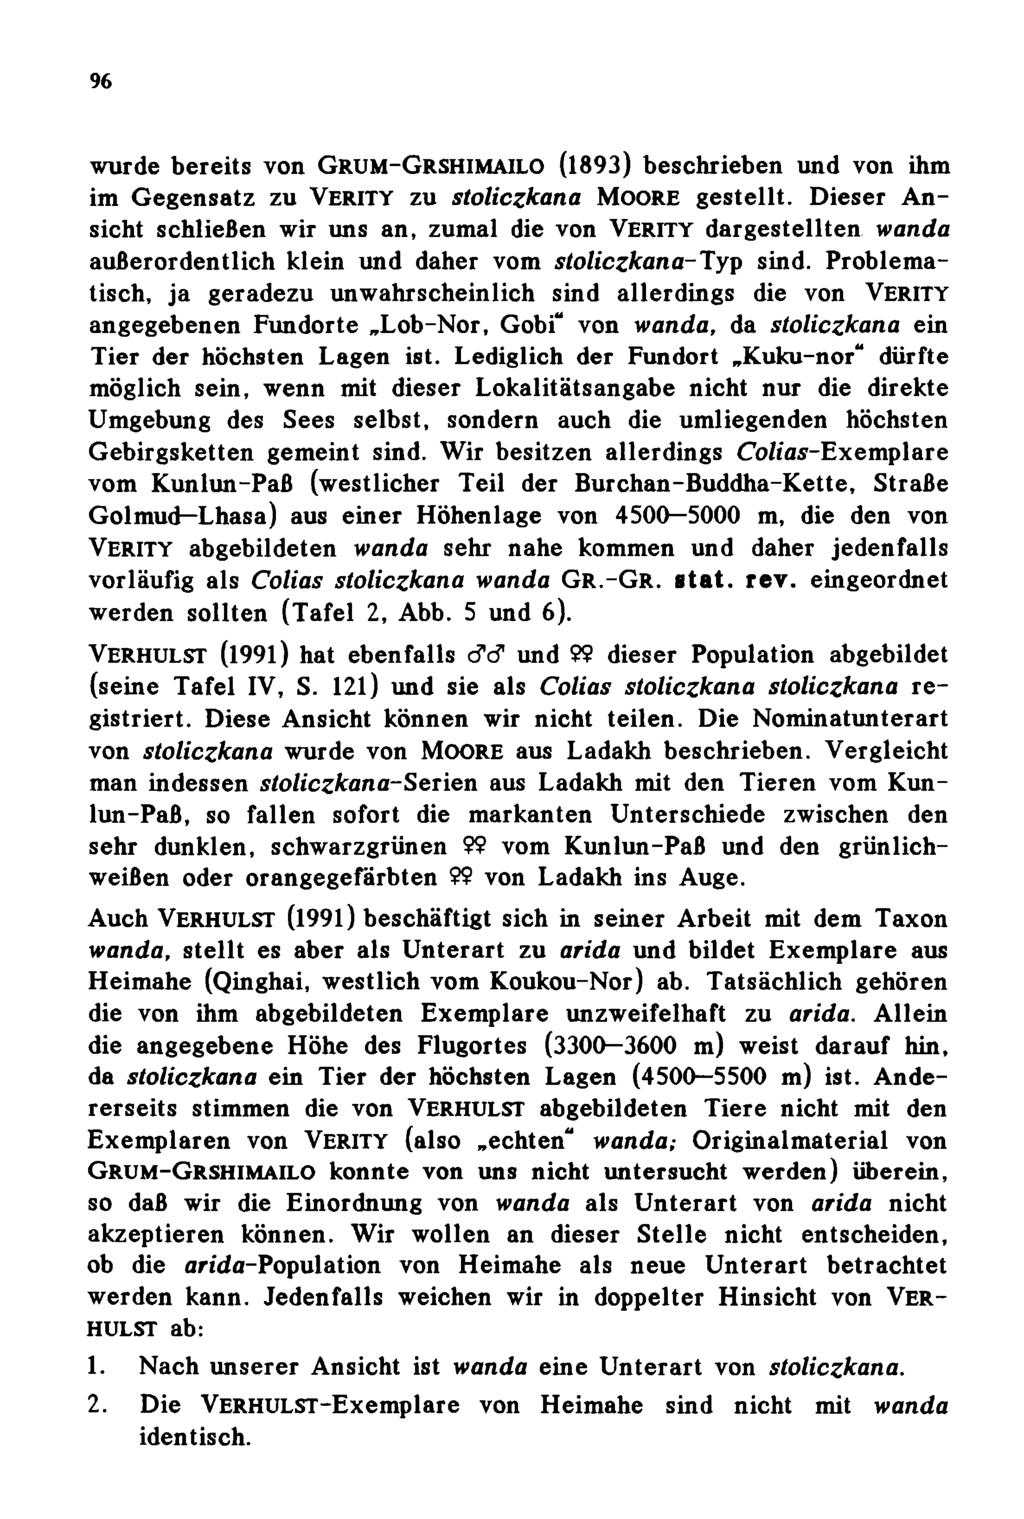 96 wurde bereits von Grum-Grshimailo (1893) beschrieben und von ihm im Gegensatz zu VERITY zu stoliczkana MOORE gestellt.